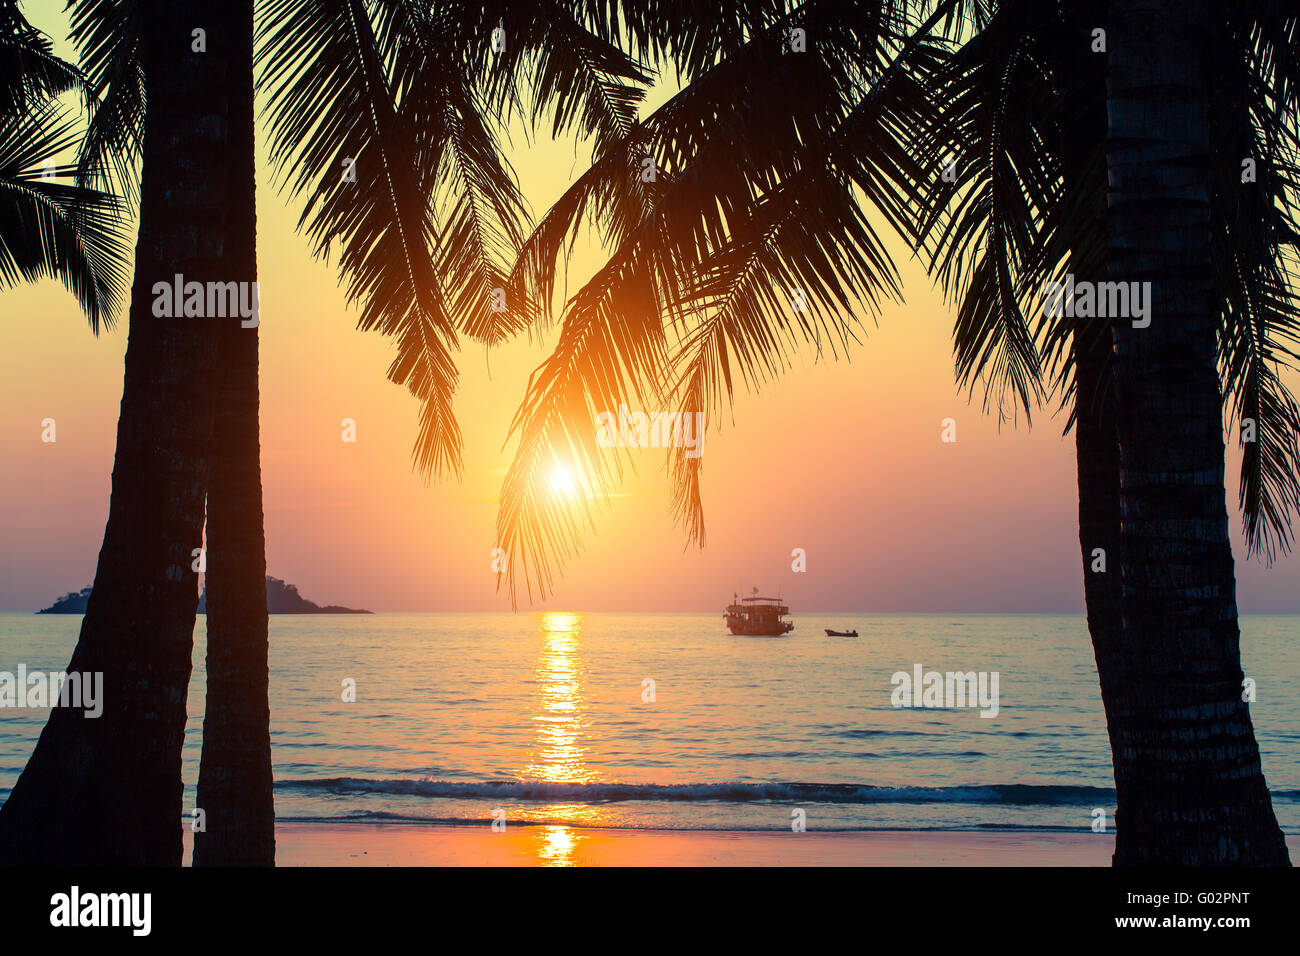 Mer tropicale, silhouettes de feuilles de palmier au cours d'un incroyable coucher du soleil. Banque D'Images